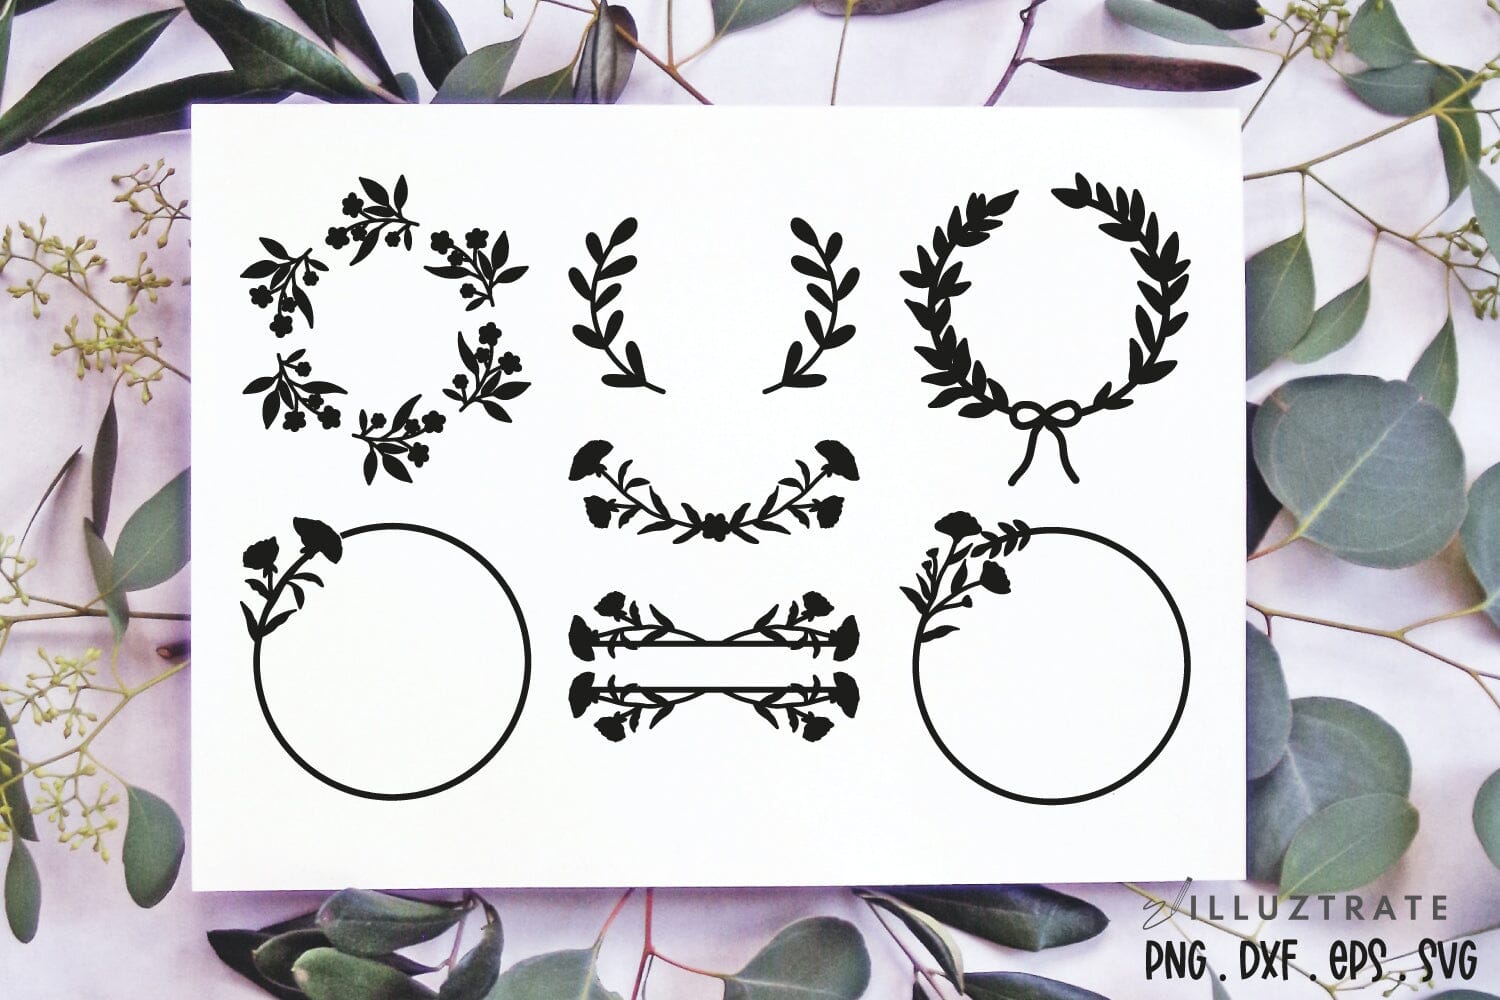 Floral Wreathe Monogram Frame #2 SVG - Free SVG files